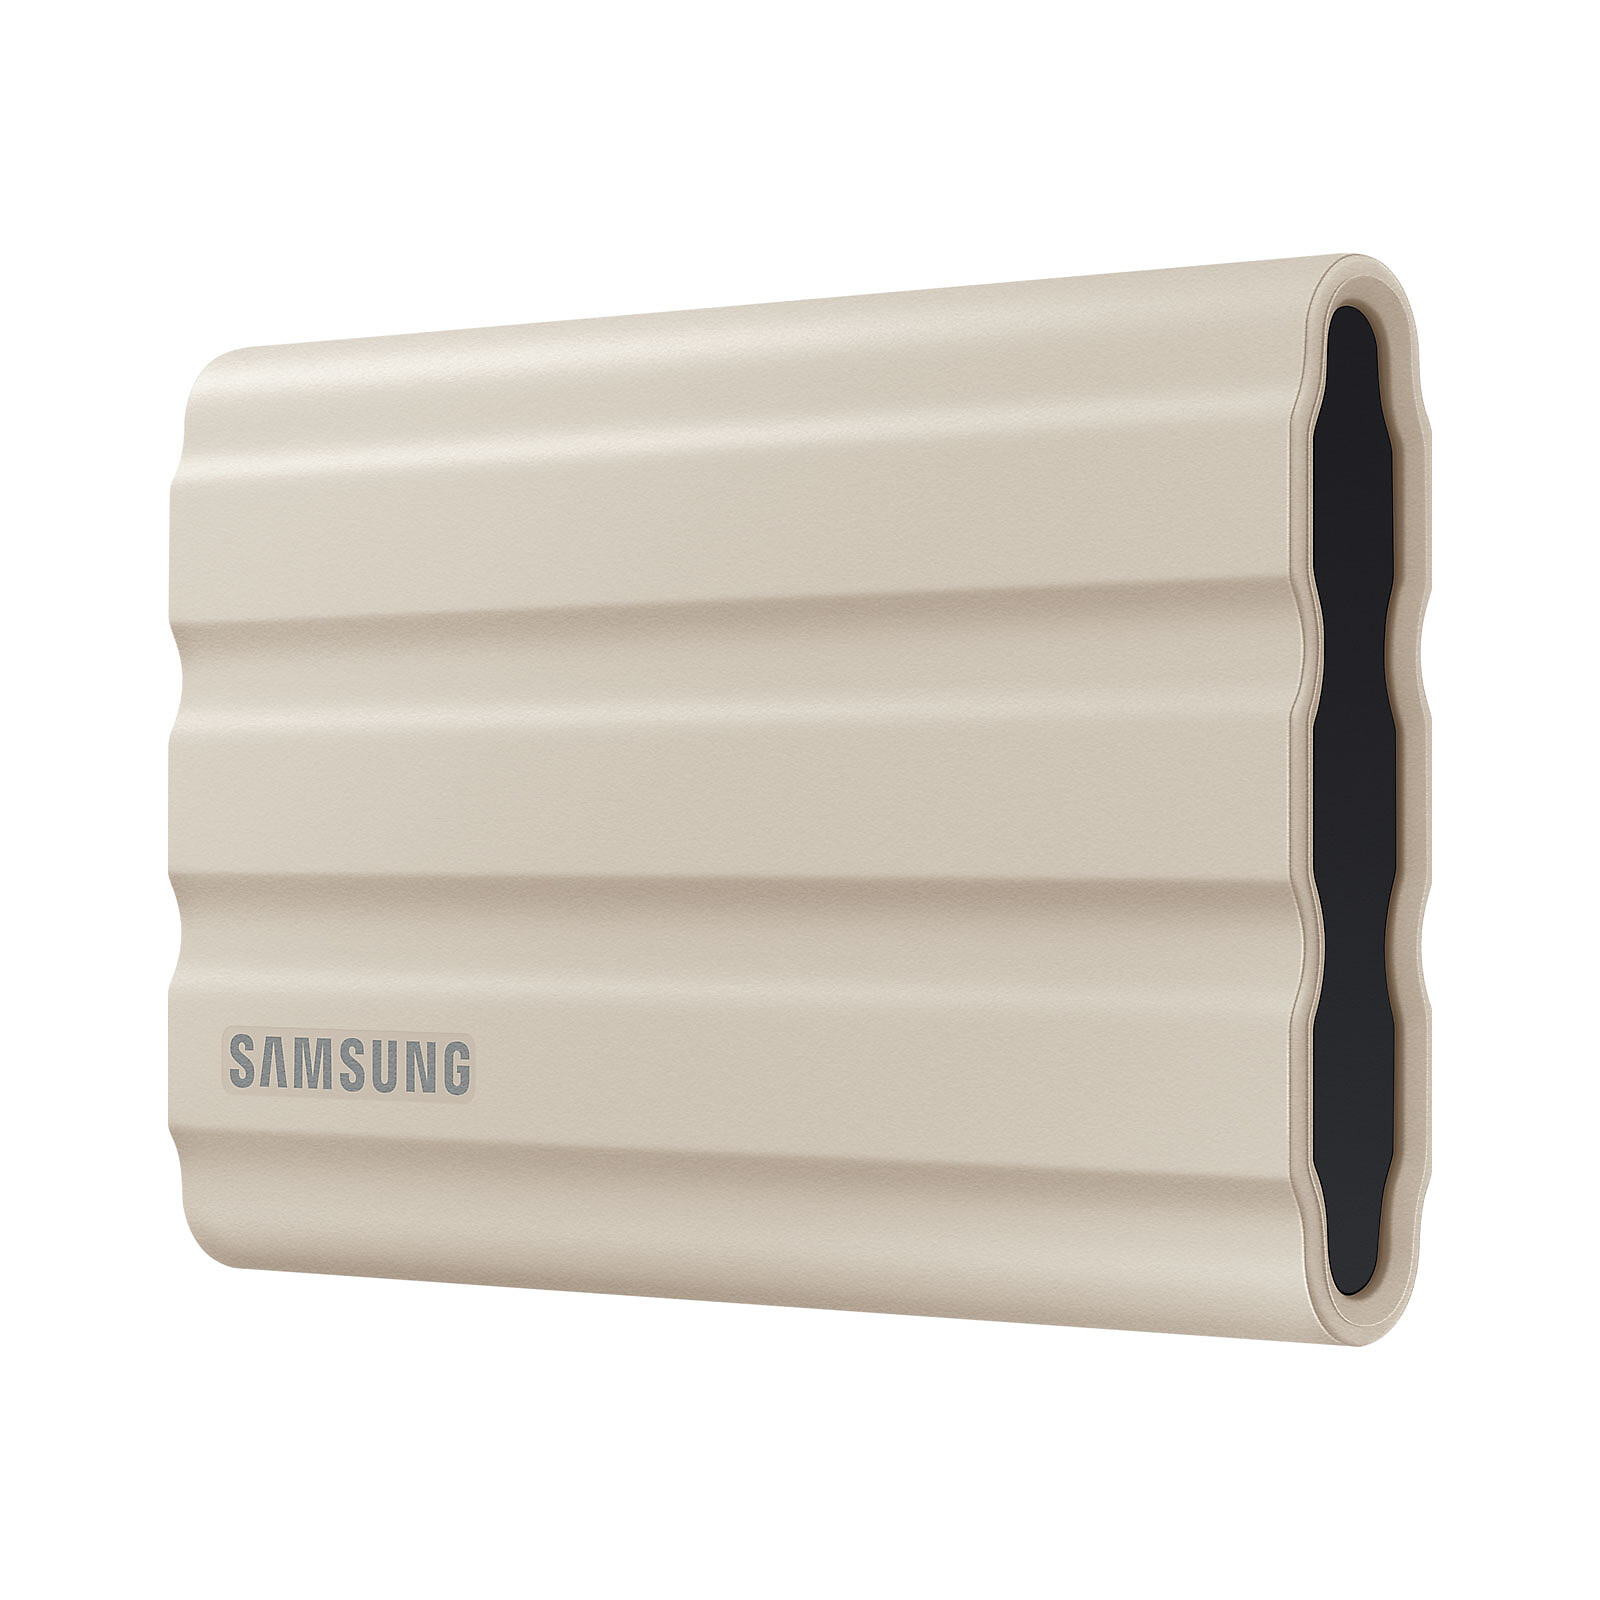 4To pour le disque SSD NVMe USB-C T7 Shield de Samsung - REPONSES PHOTO